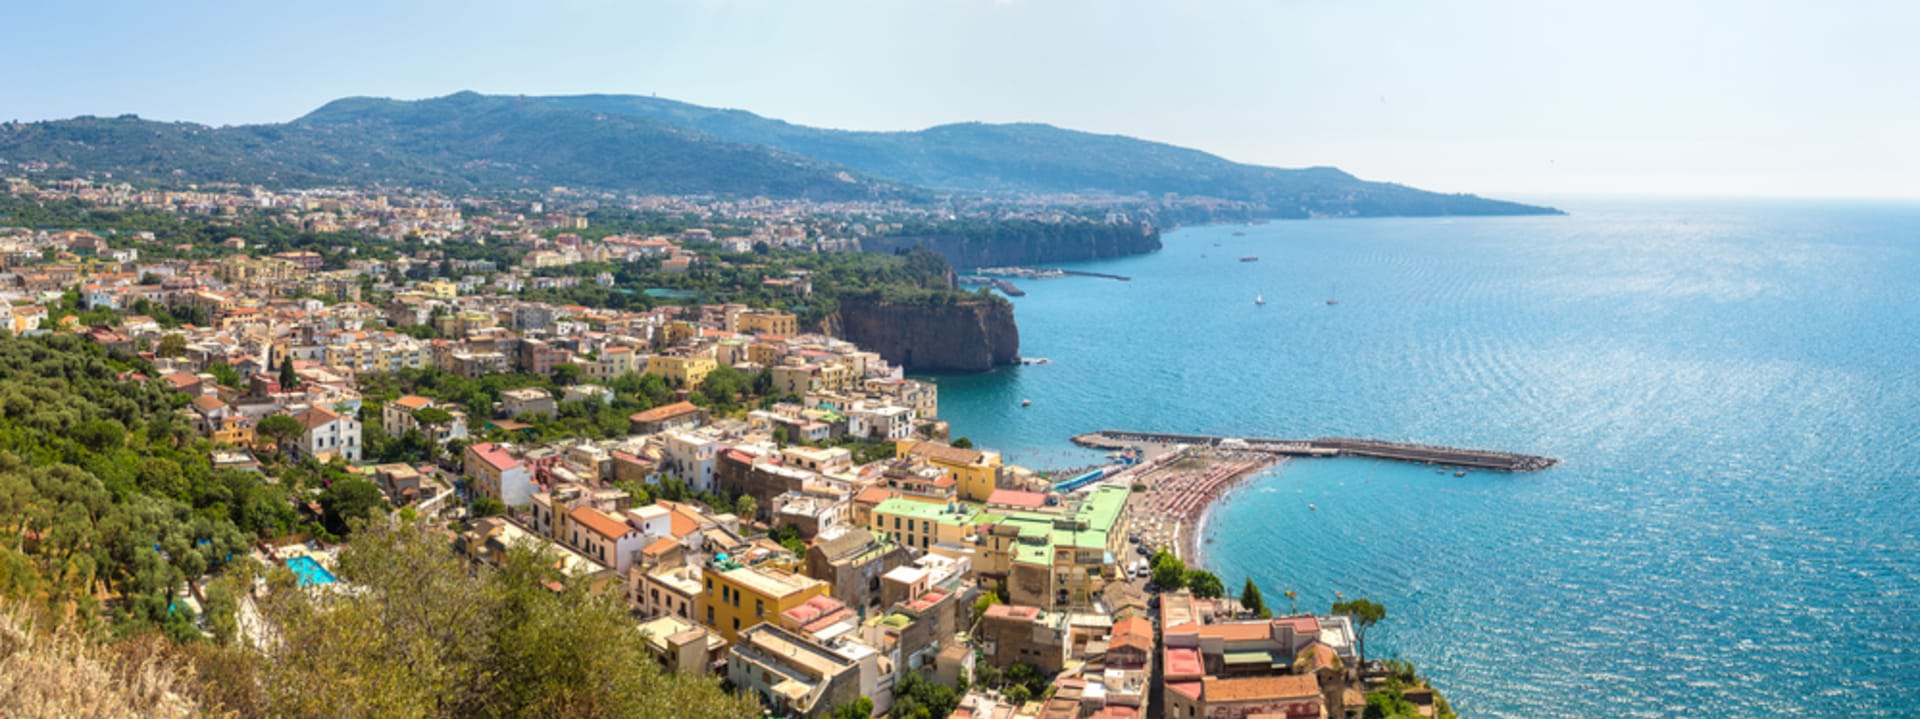 Sorrento patří k nejznámějším i nejkrásnějším letoviskům v Itálii.